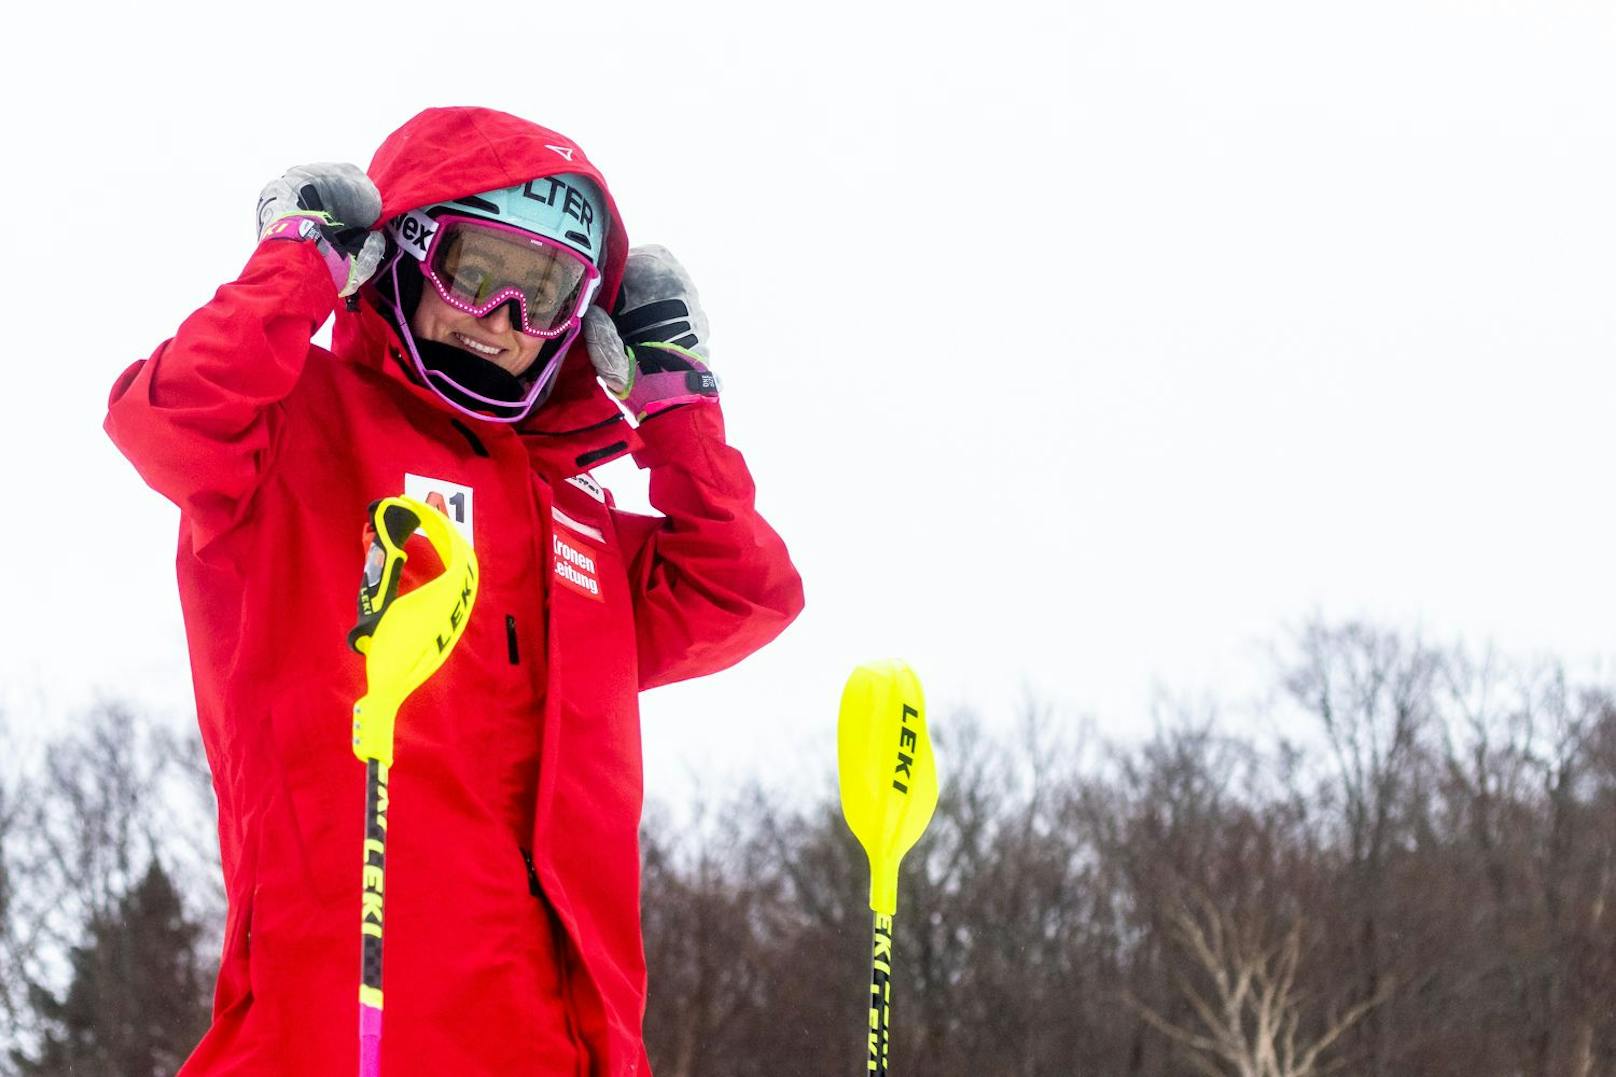 <strong>Chiara Mair:</strong> Die Slalom-Spezialistin bekam im Training einen Schlag auf den Helm und erlitt eine Gehirnerschütterung. Die Tirolerin muss noch immer aussetzen.